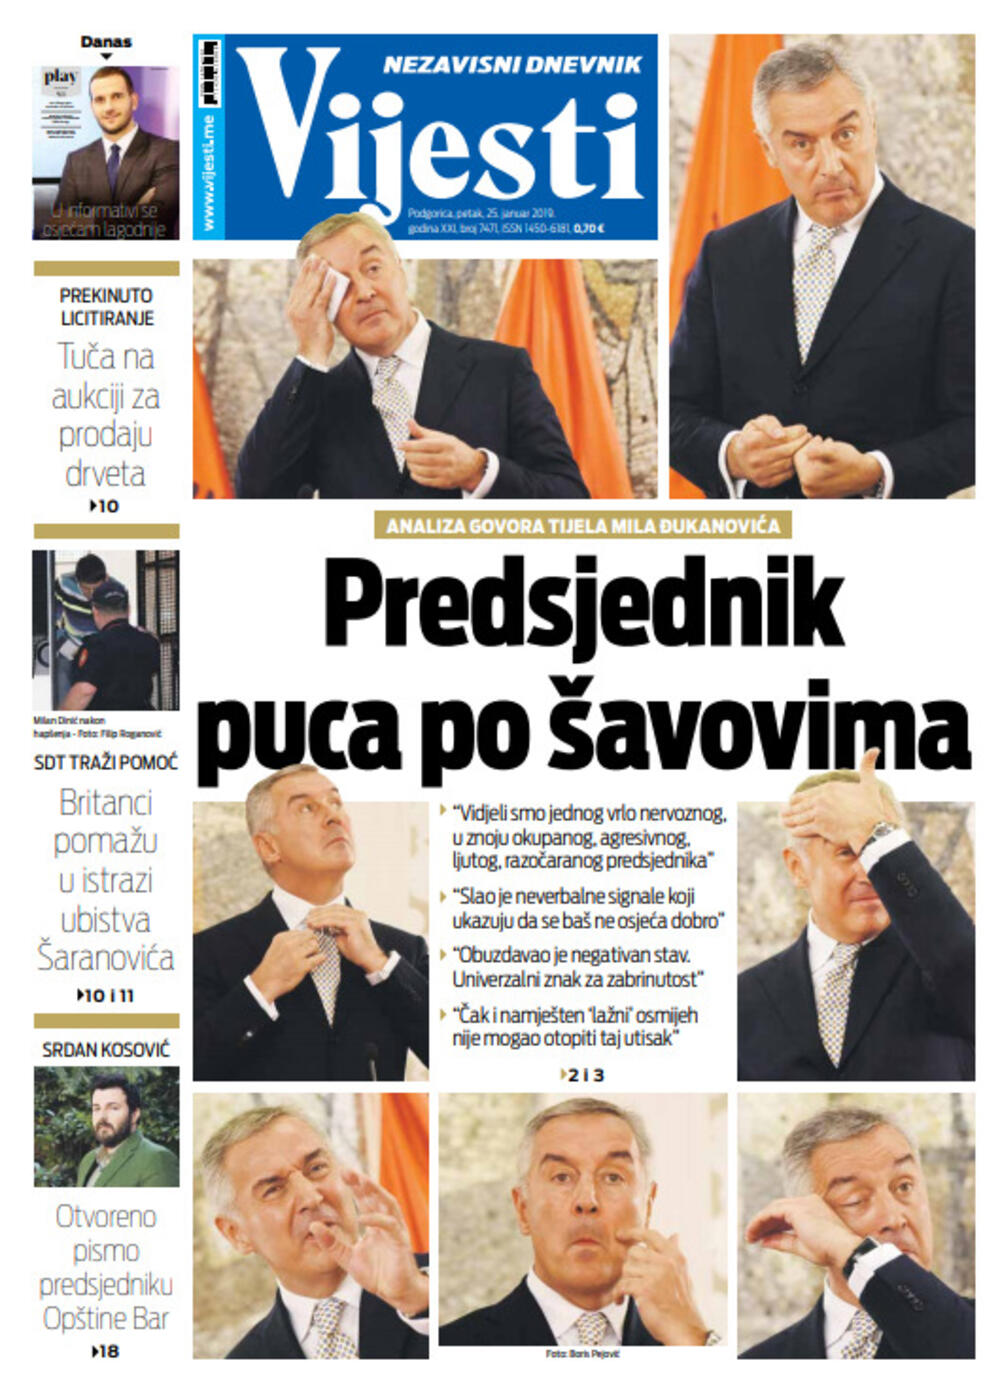 Naslovna strana "Vijesti" za 25. januar, Foto: Vijesti